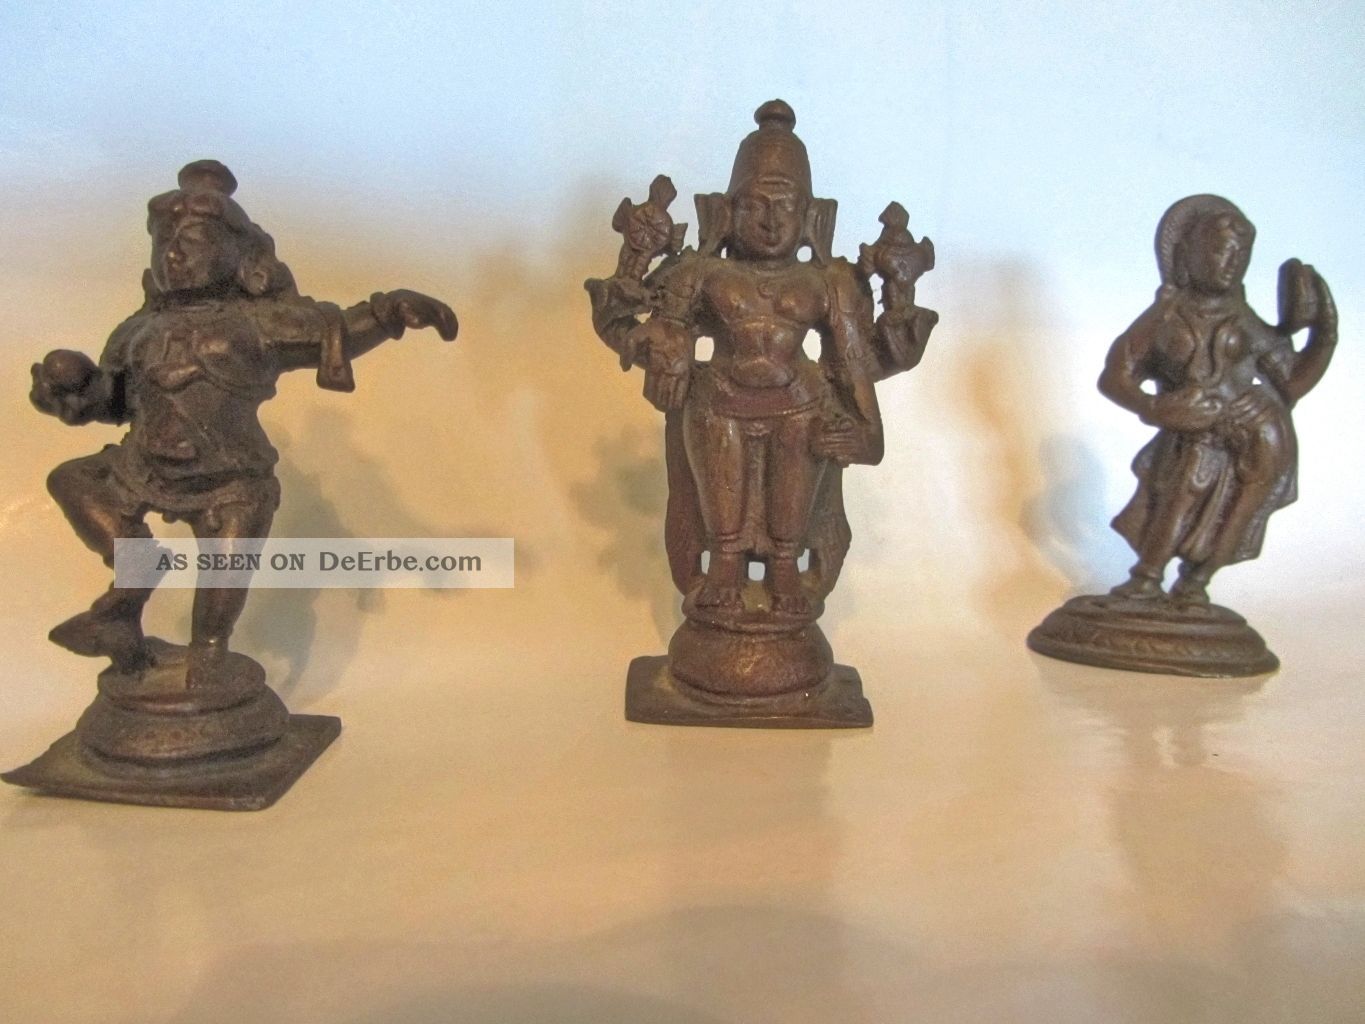 3 Seltene Kleine Indische Statuen Aus Messing 7 - 8 Cm Hoch Entstehungszeit nach 1945 Bild